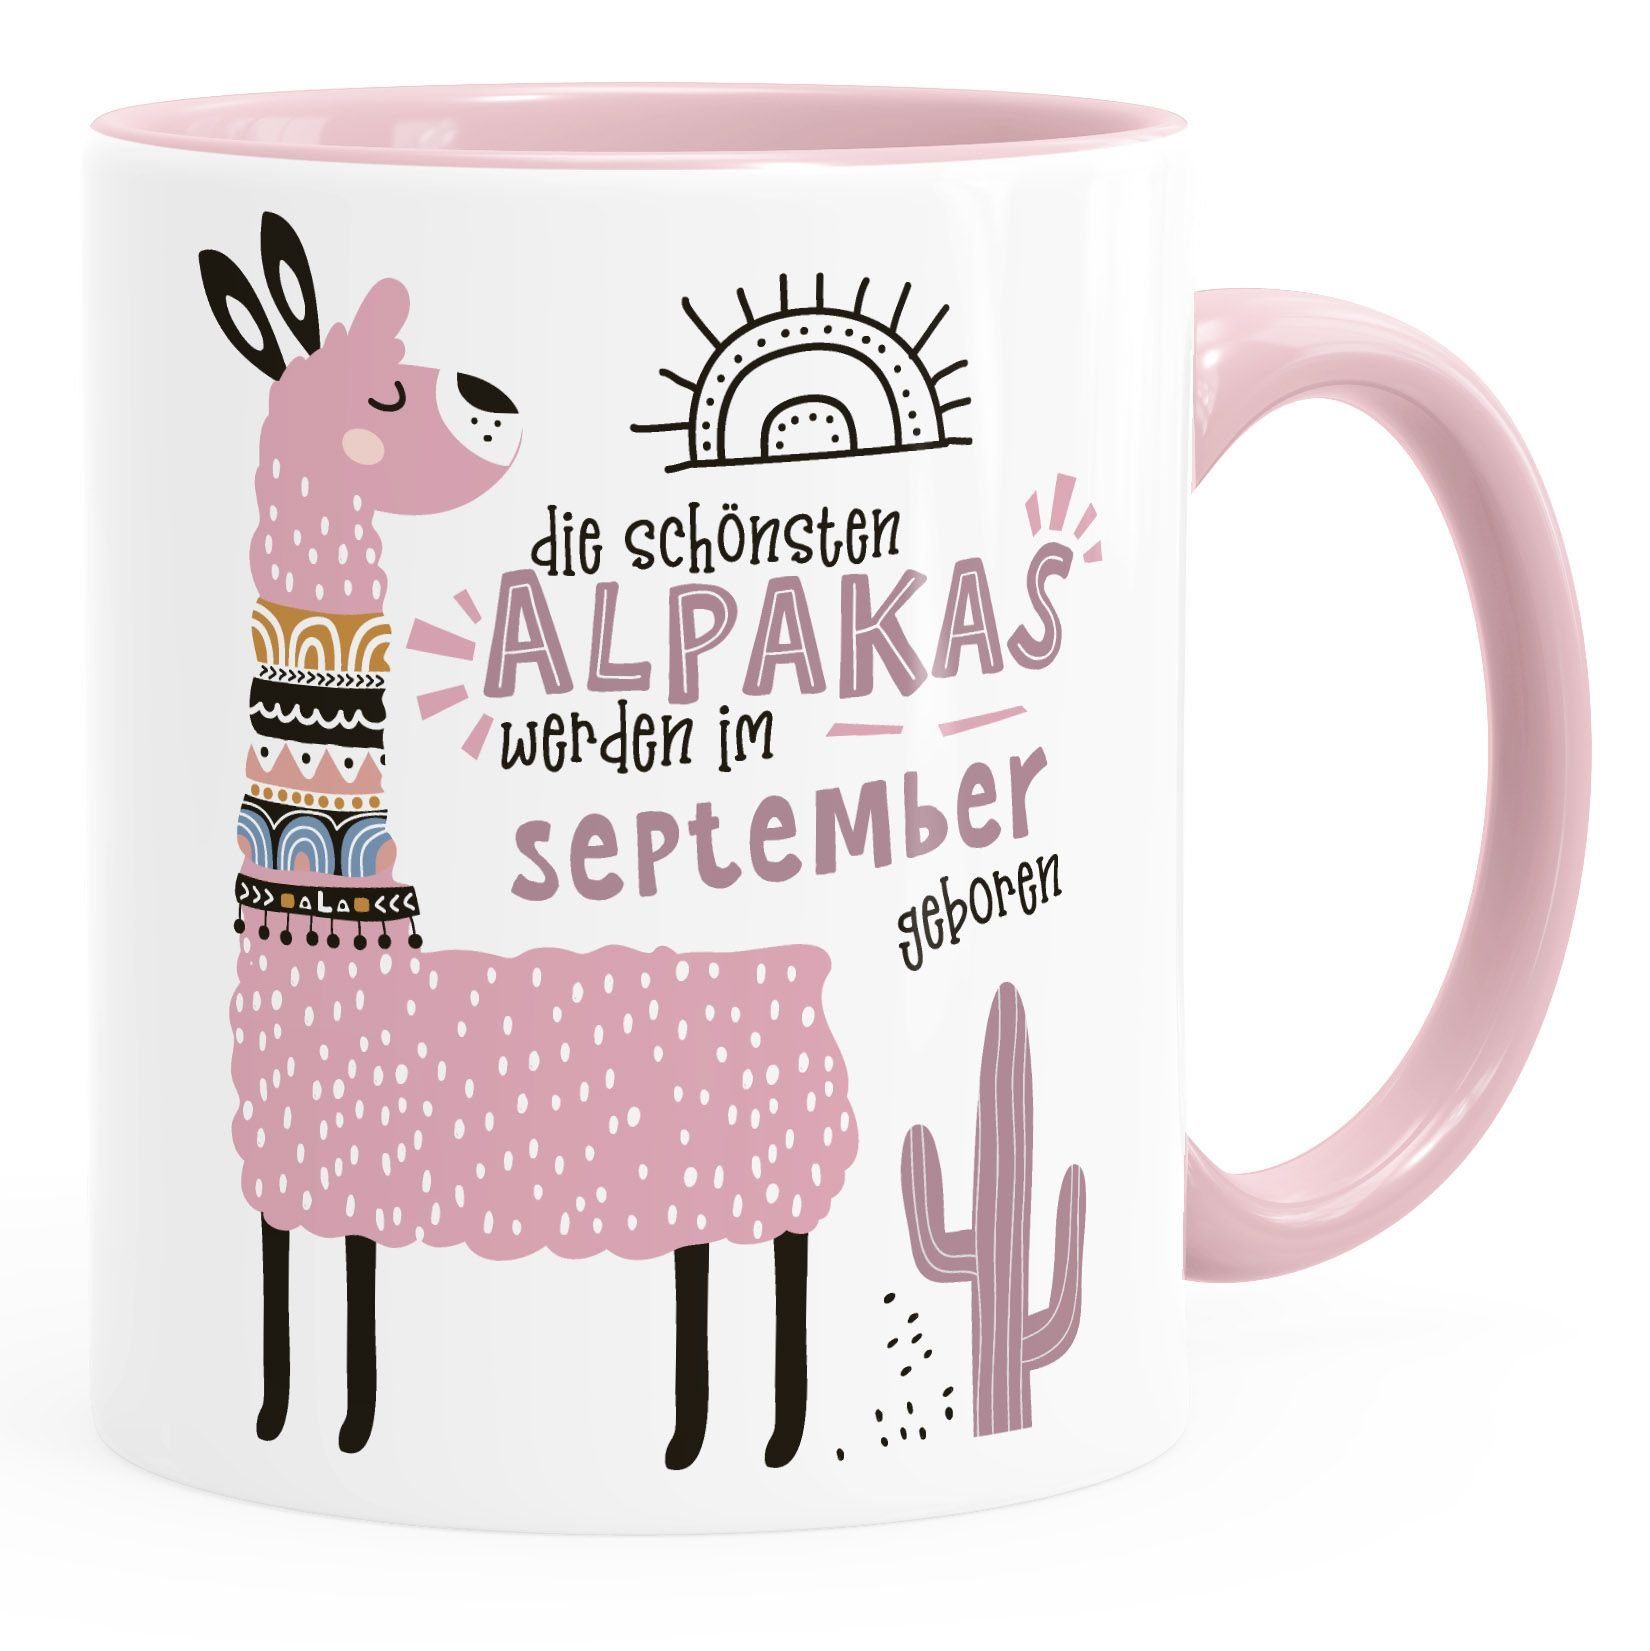 SpecialMe Motiv SpecialMe®, Geburtsmonat Januar-Dezember werden anpassbares individuelle geboren rosa September Alpakas Rosa Kaffee-Tasse Keramik Lama Geburtags-Geschenke im Die Schönsten Tasse